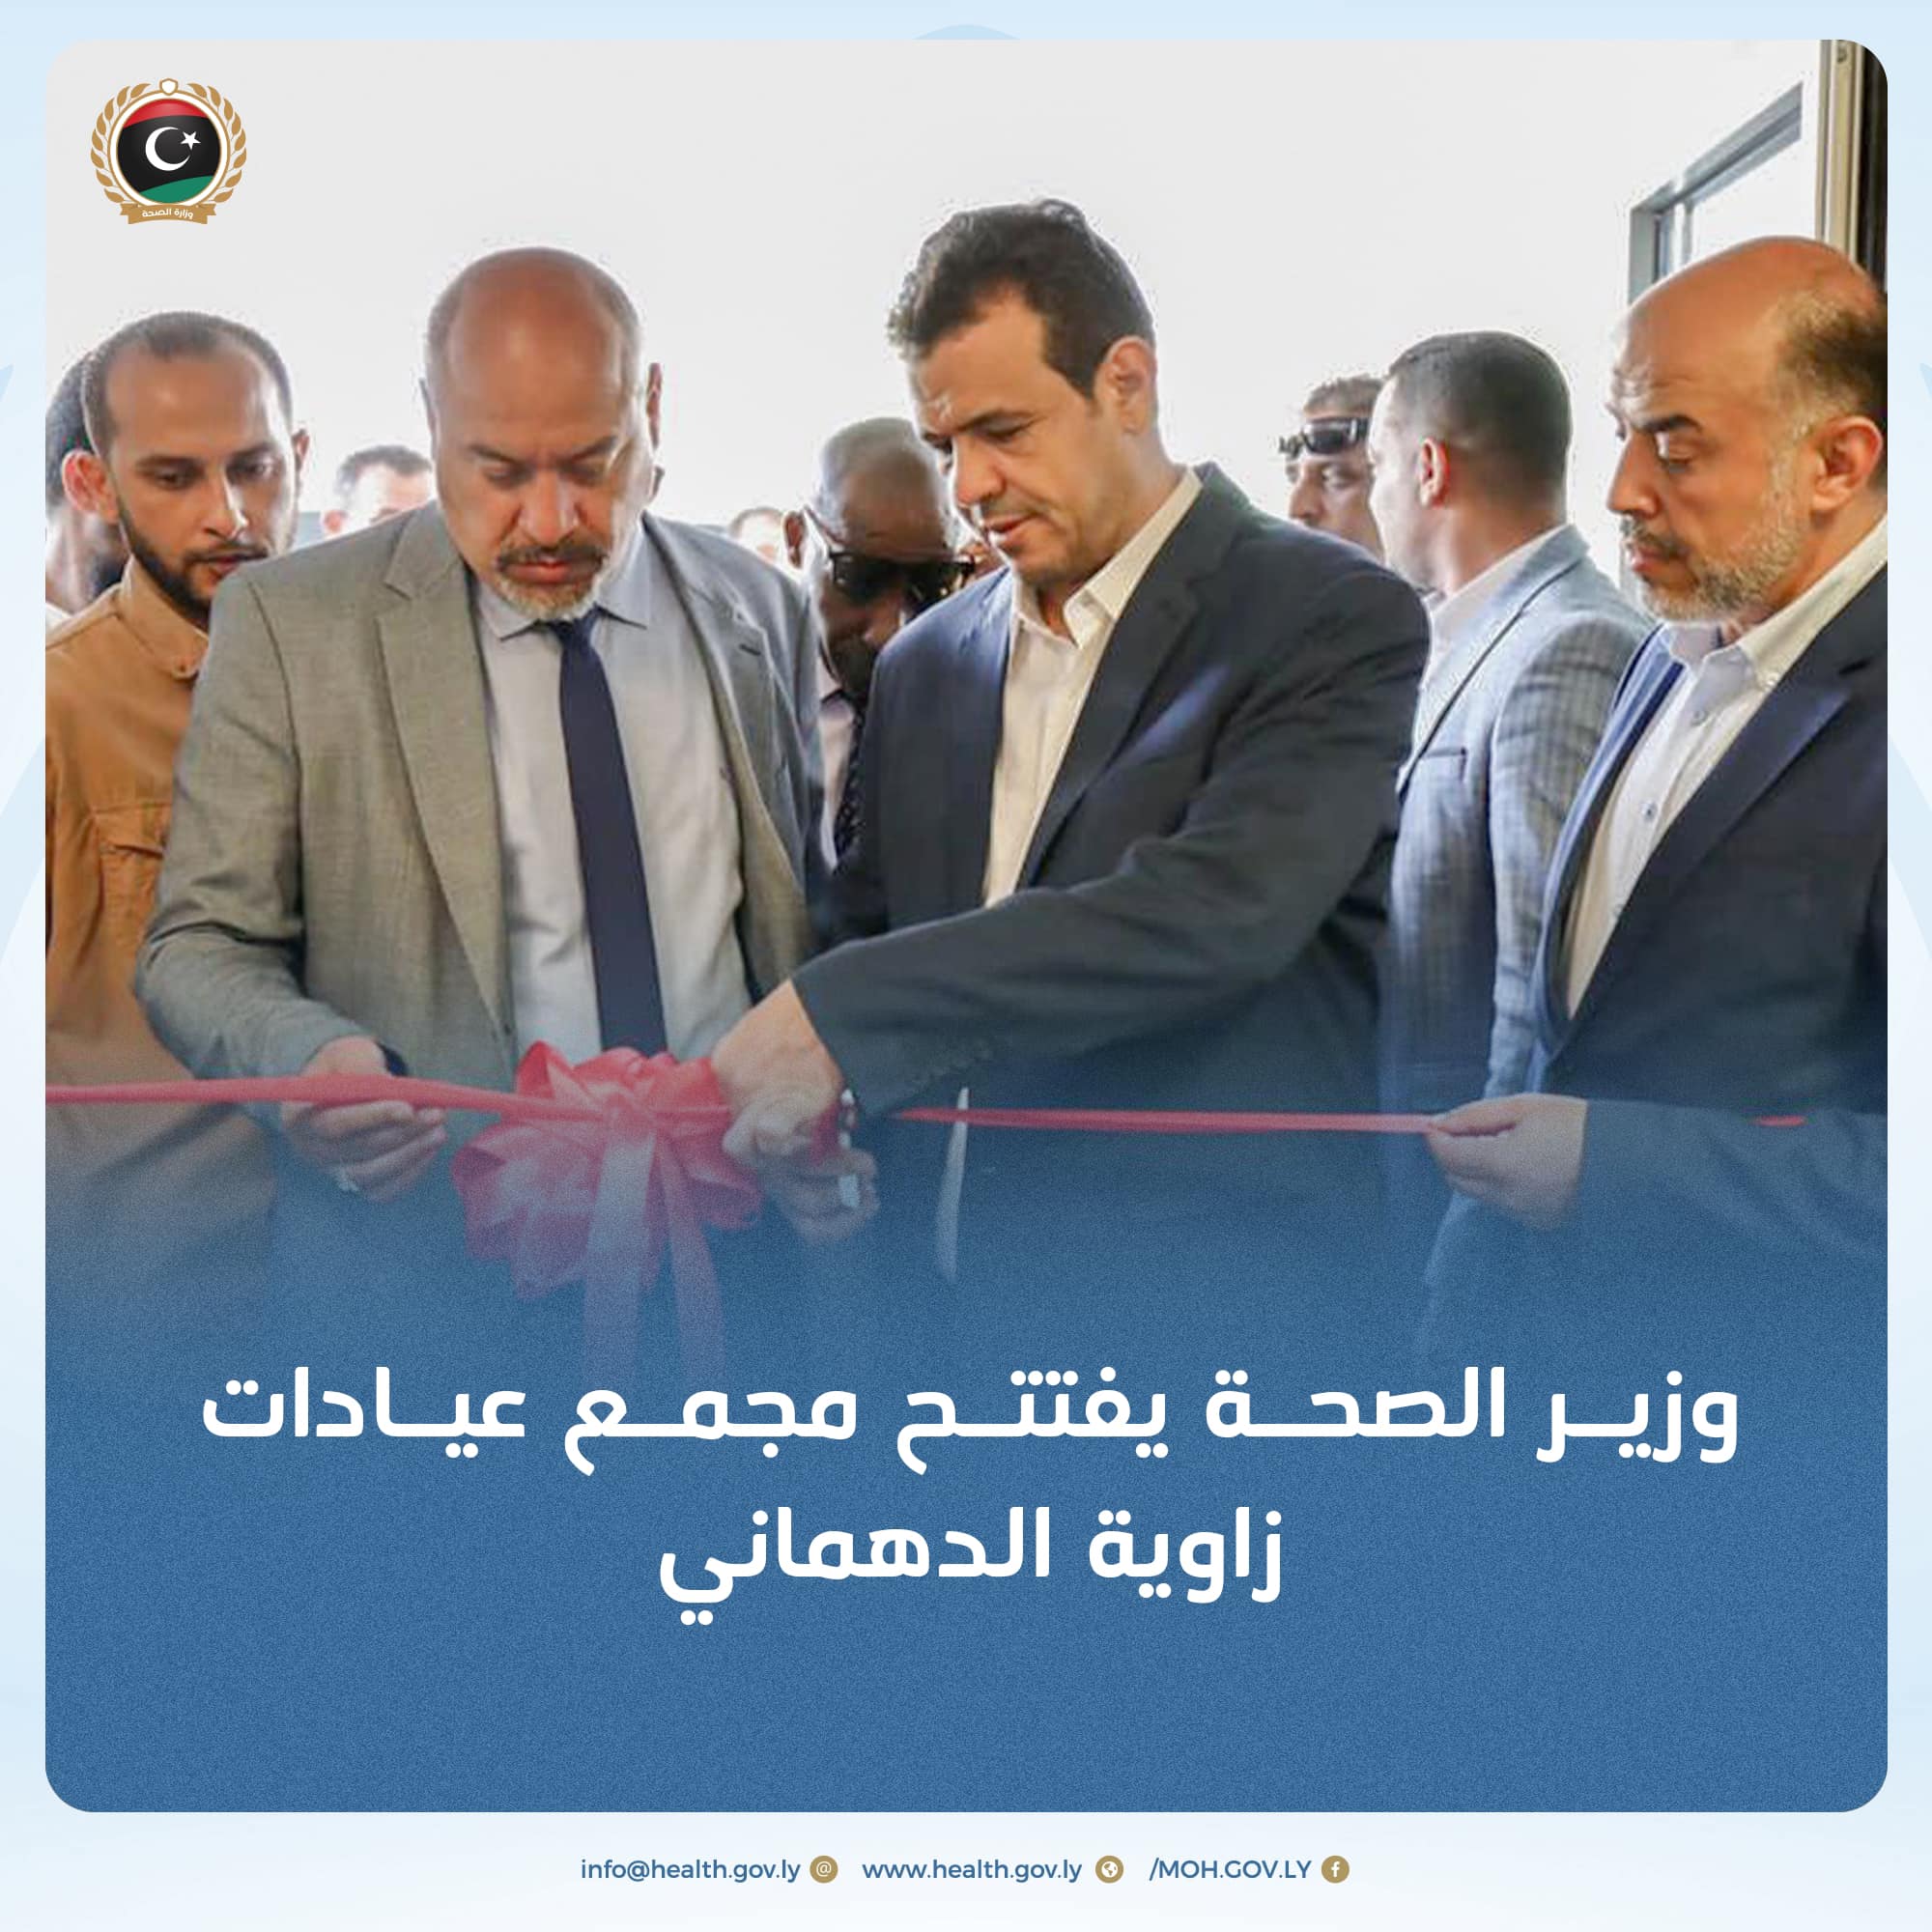 وزير الصحة يفتتح مجمع عيادات زاوية الدهماني بطرابلس